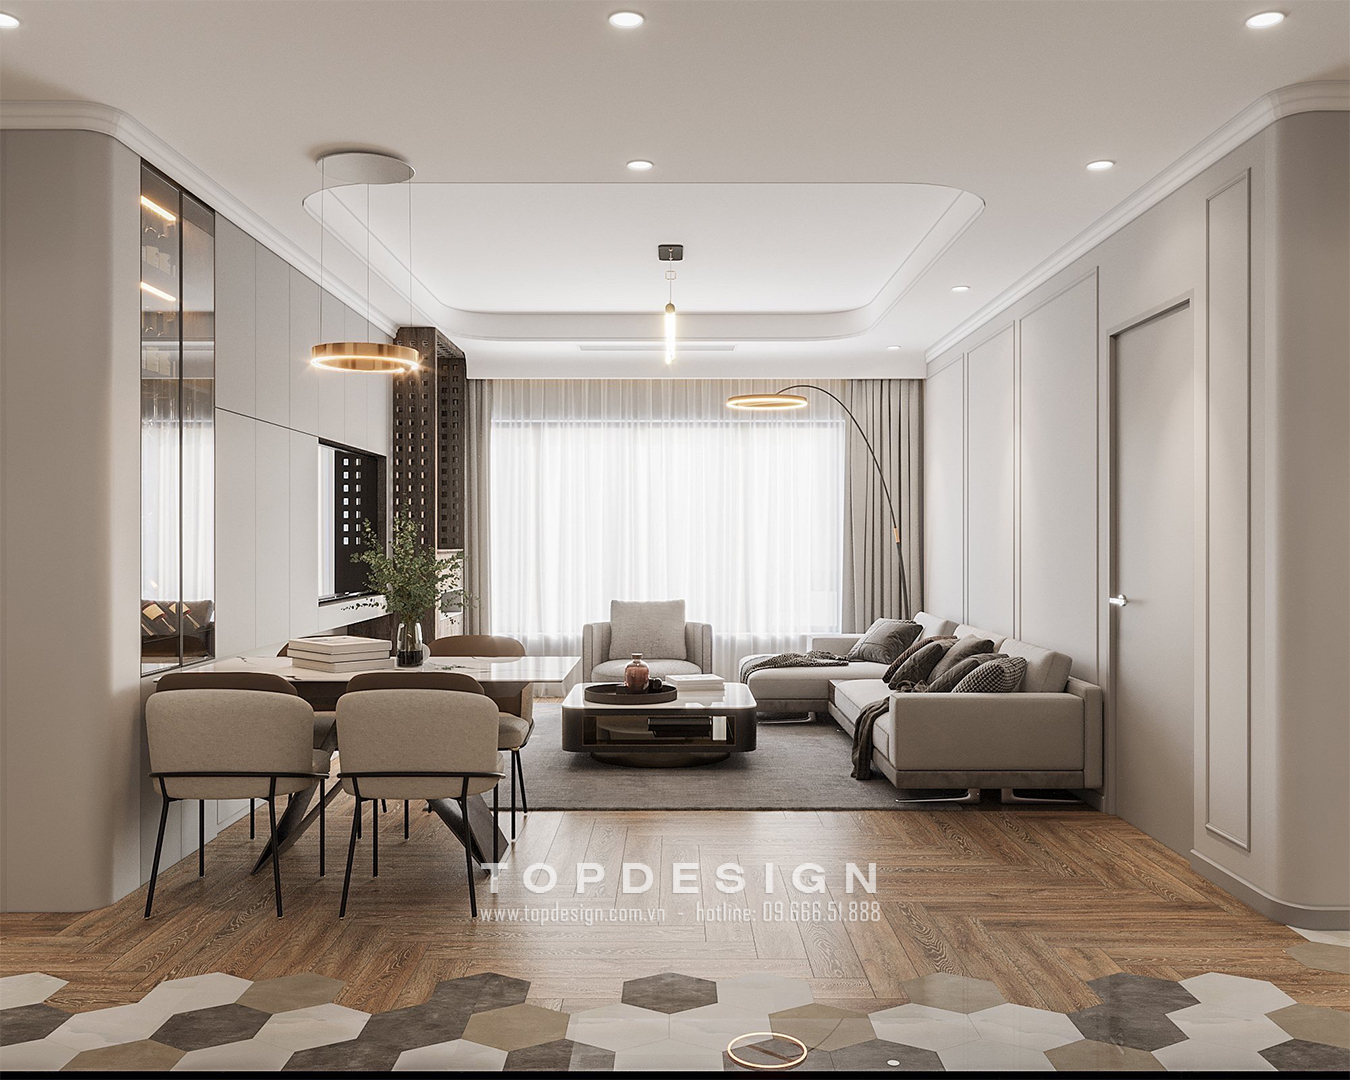 2. Thiết kế nội thất chung cư lacasta văn phú hà đông - Phòng khách - TOPDESIGN